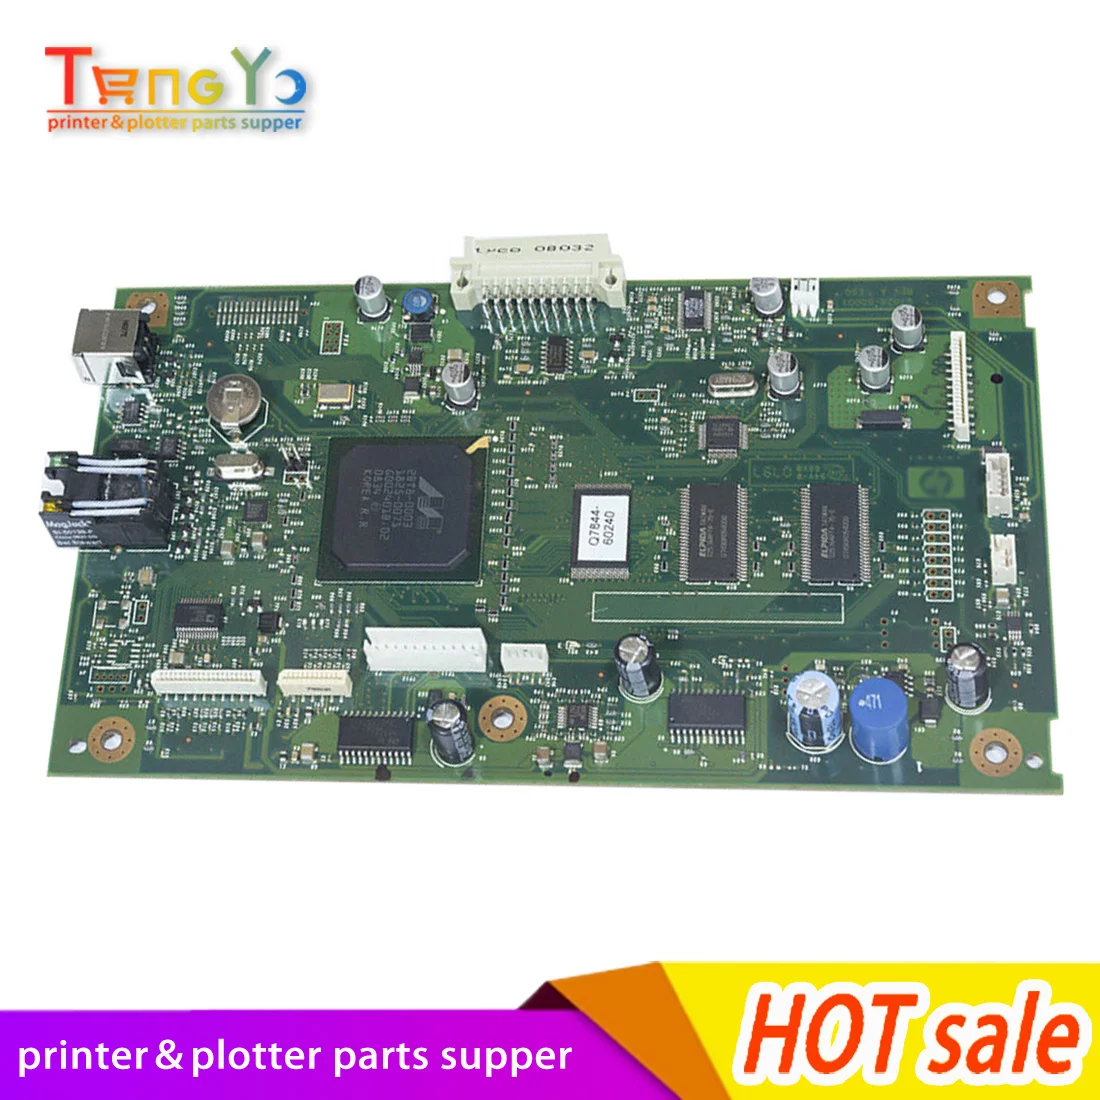 

Q7529-60002 Formatter board MainBoard mother board Main Board logic board for laserJet HP3055/3055N/3055MFP series printer parts